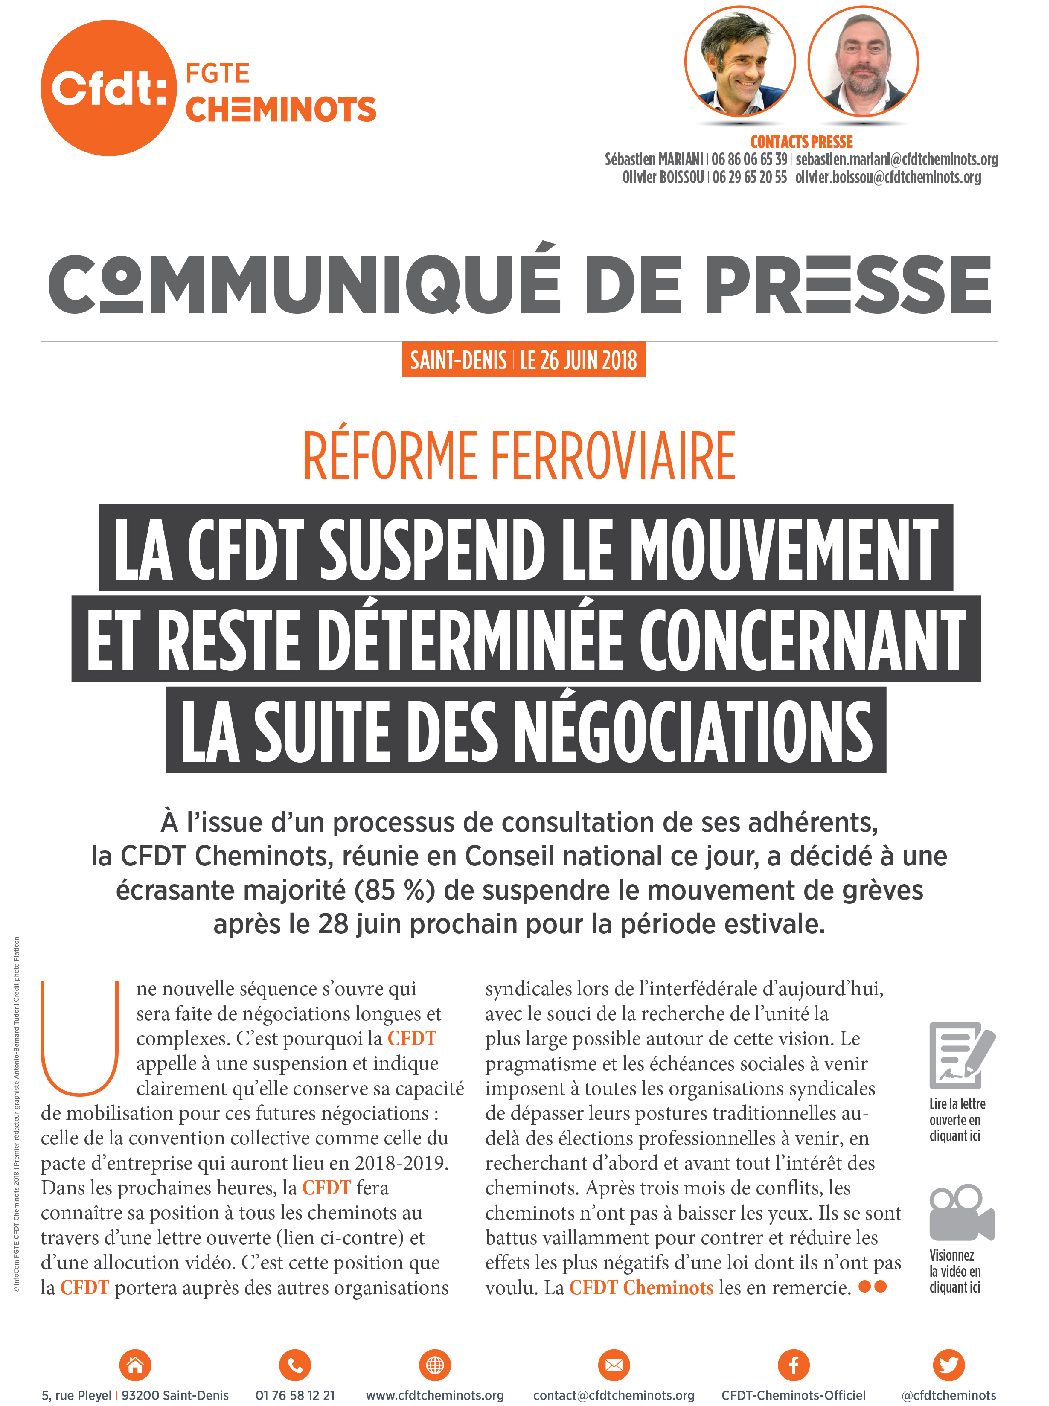 La CFDT suspend le mouvement et reste déterminée concernant la suite des négociations